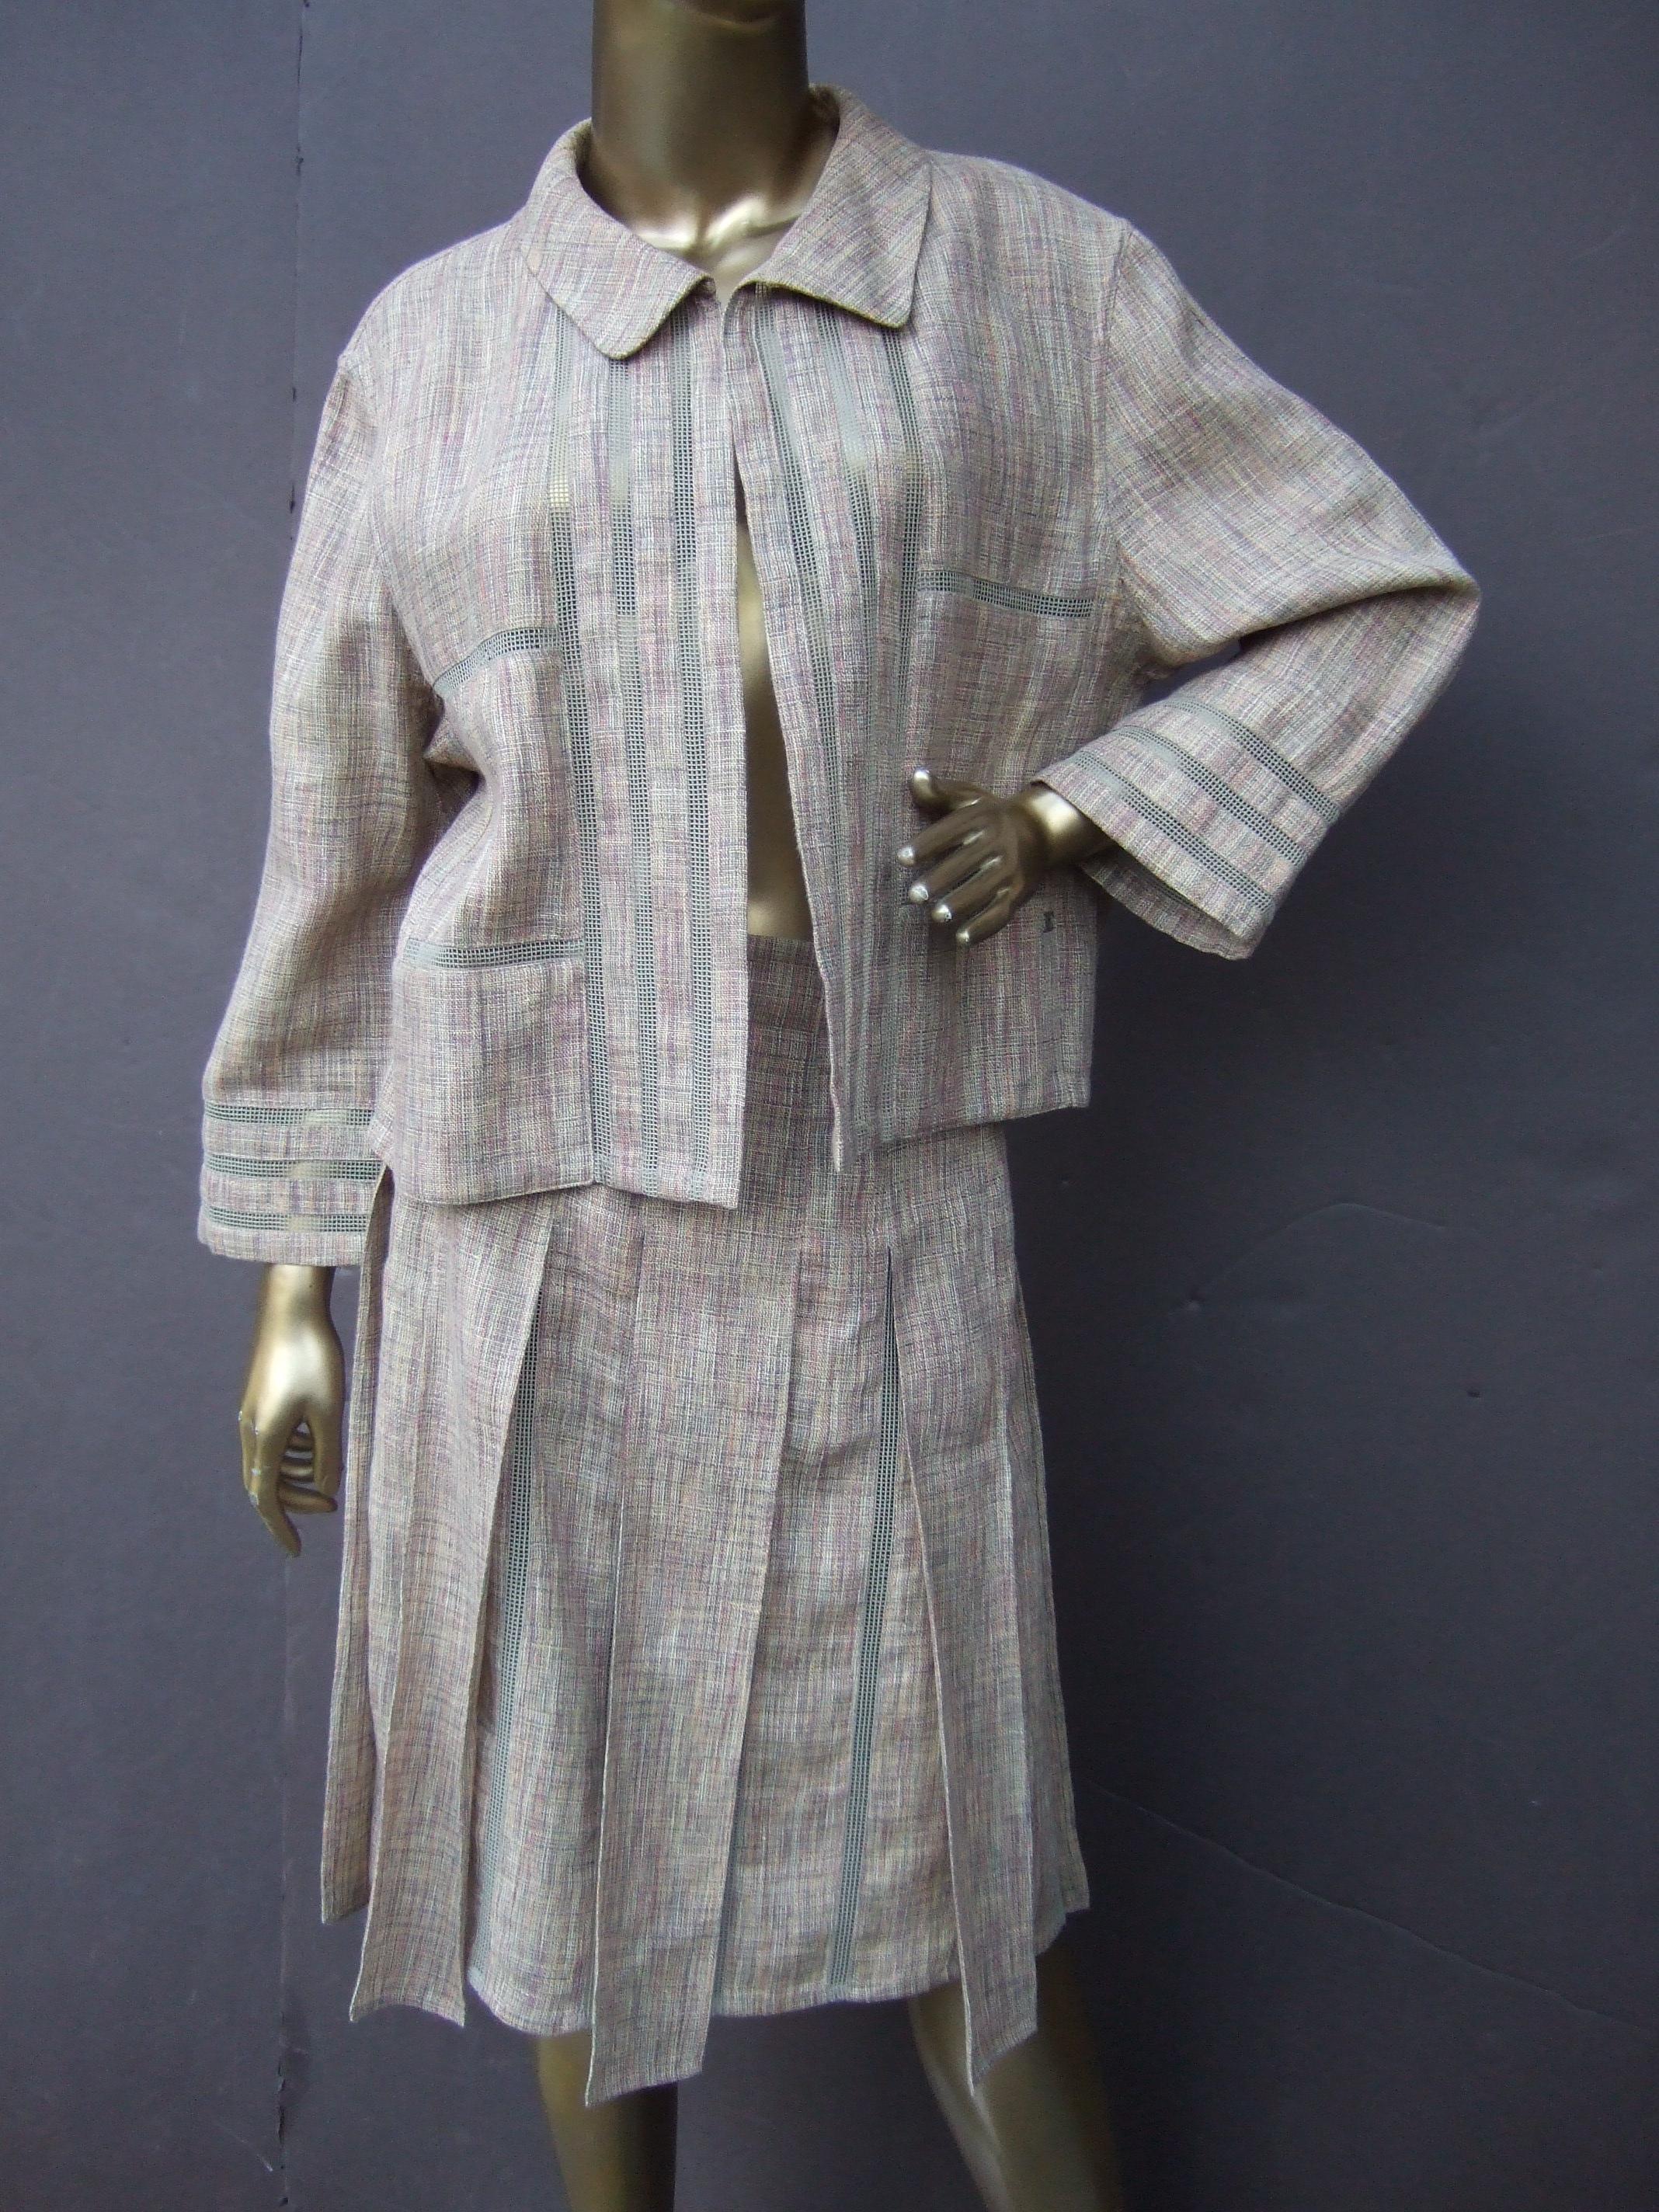 Chanel Chic Beige Linen & Cotton Blend Skirt Suit c 2000 Size 40  For Sale 14